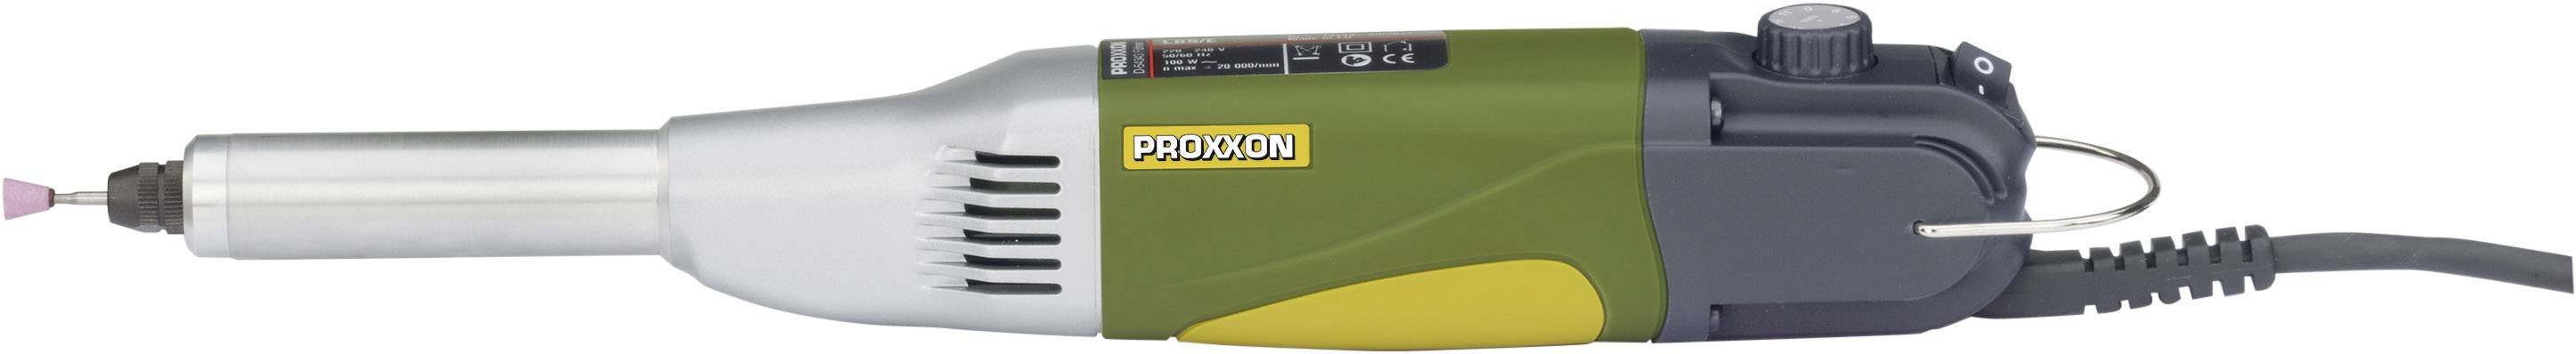 PROXXON Multifunktionswerkzeug inkl. Koffer 100 W Proxxon Micromot LBS/E 28 485